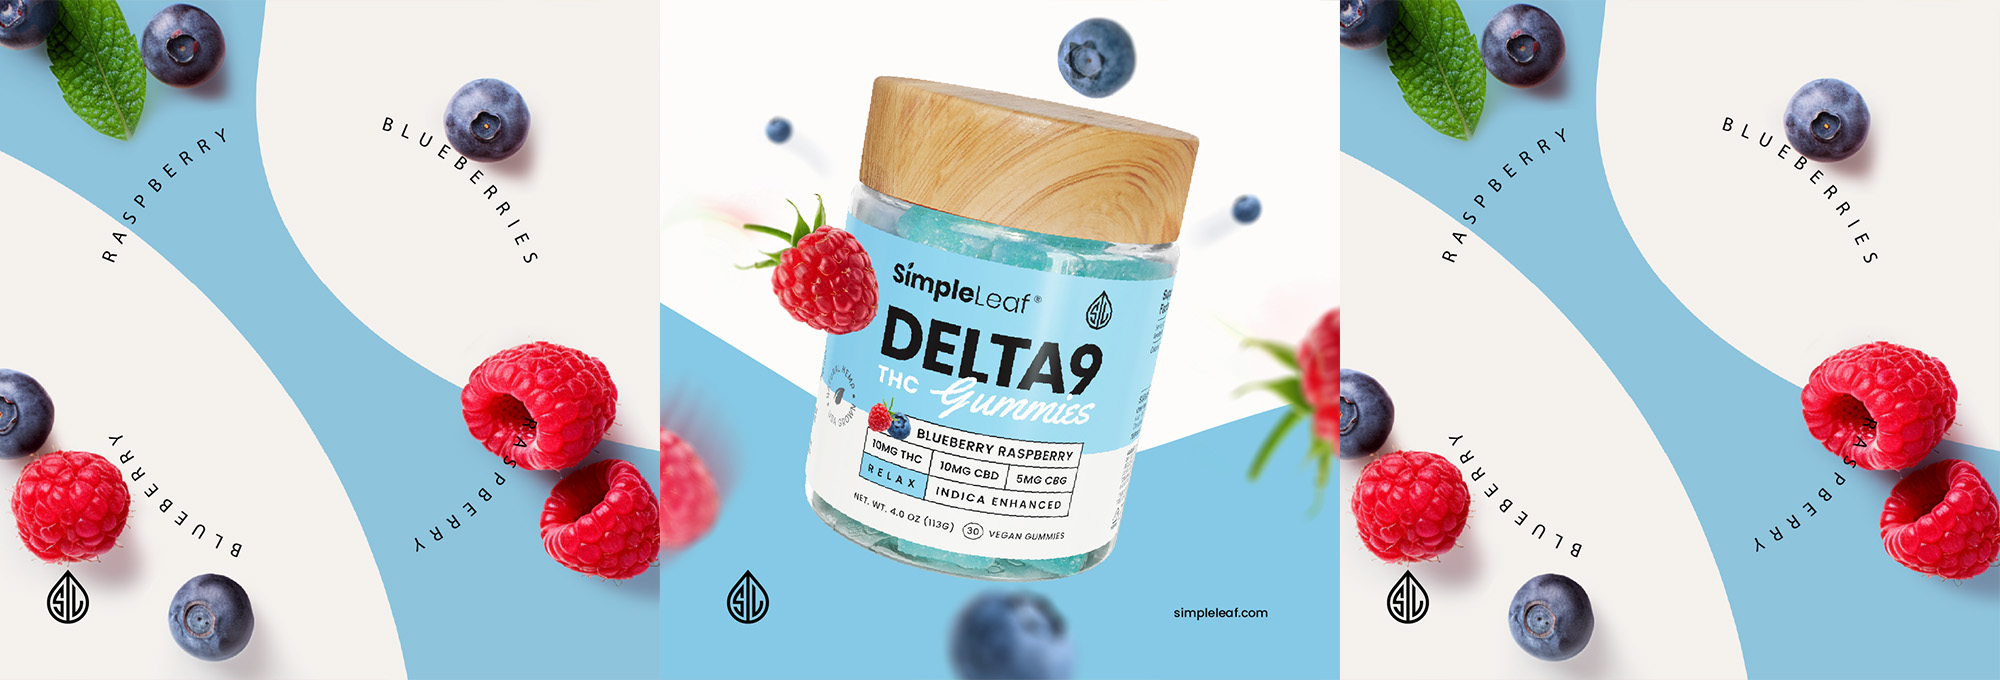 Delta-9 THC Gummies - Organic Hemp Derived - INDICA gummy